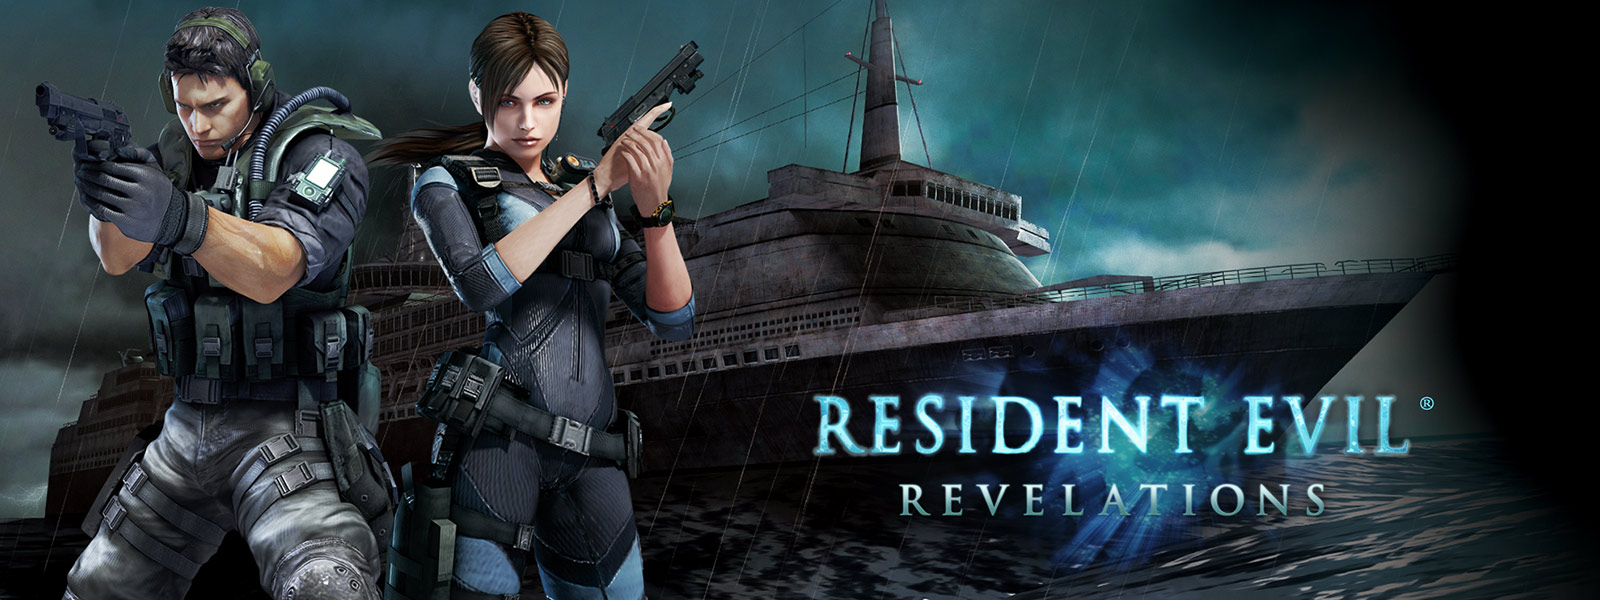 Resident Evil Revelations – zwei Charaktere mit Pistolen vor einem gespenstisch aussehenden Kreuzfahrtschiff